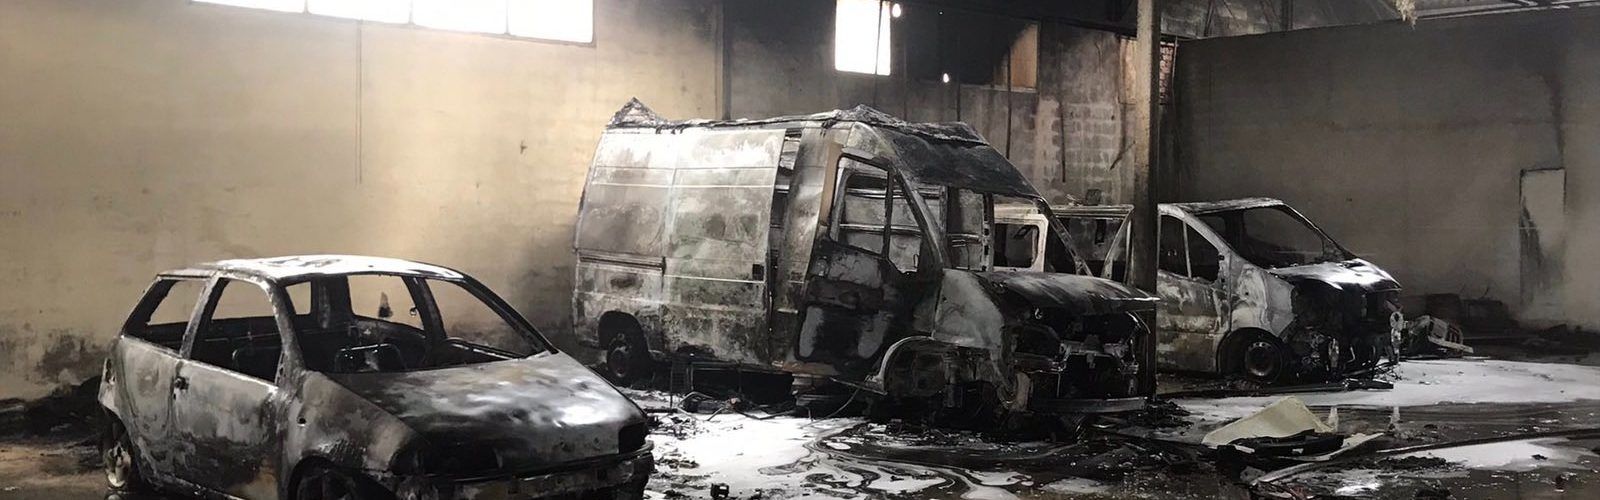 Tres vehículos calcinados en el incendio de una nave en Vinaròs